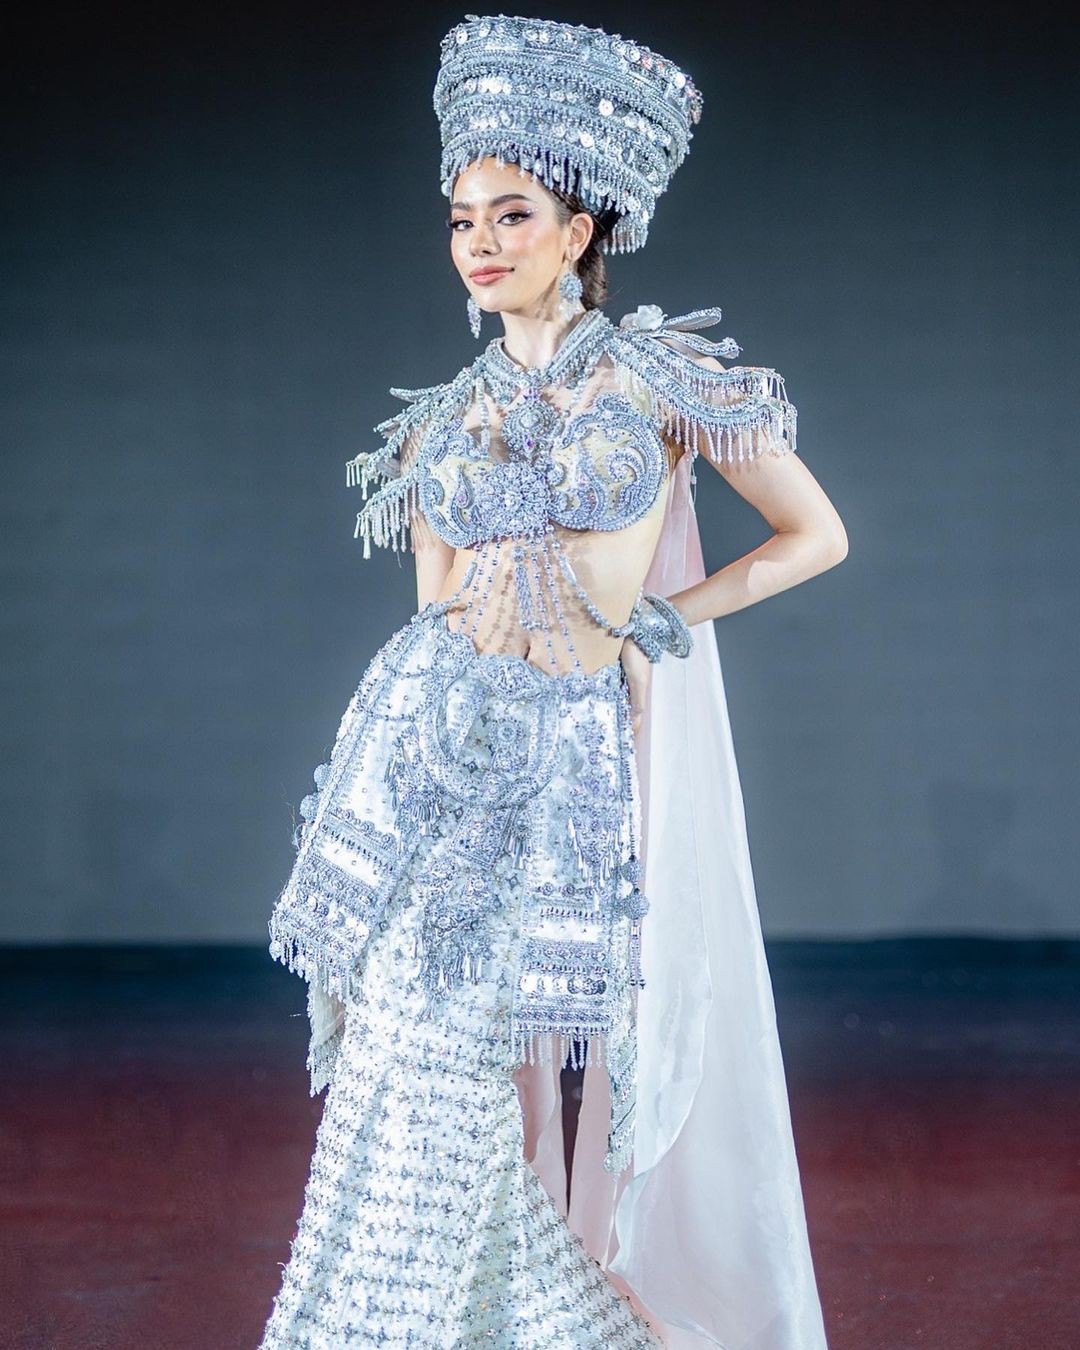 Màn trình diễn của người đẹp gốc Việt ở Hoa hậu Hòa bình Thái Lan - Ảnh 15.